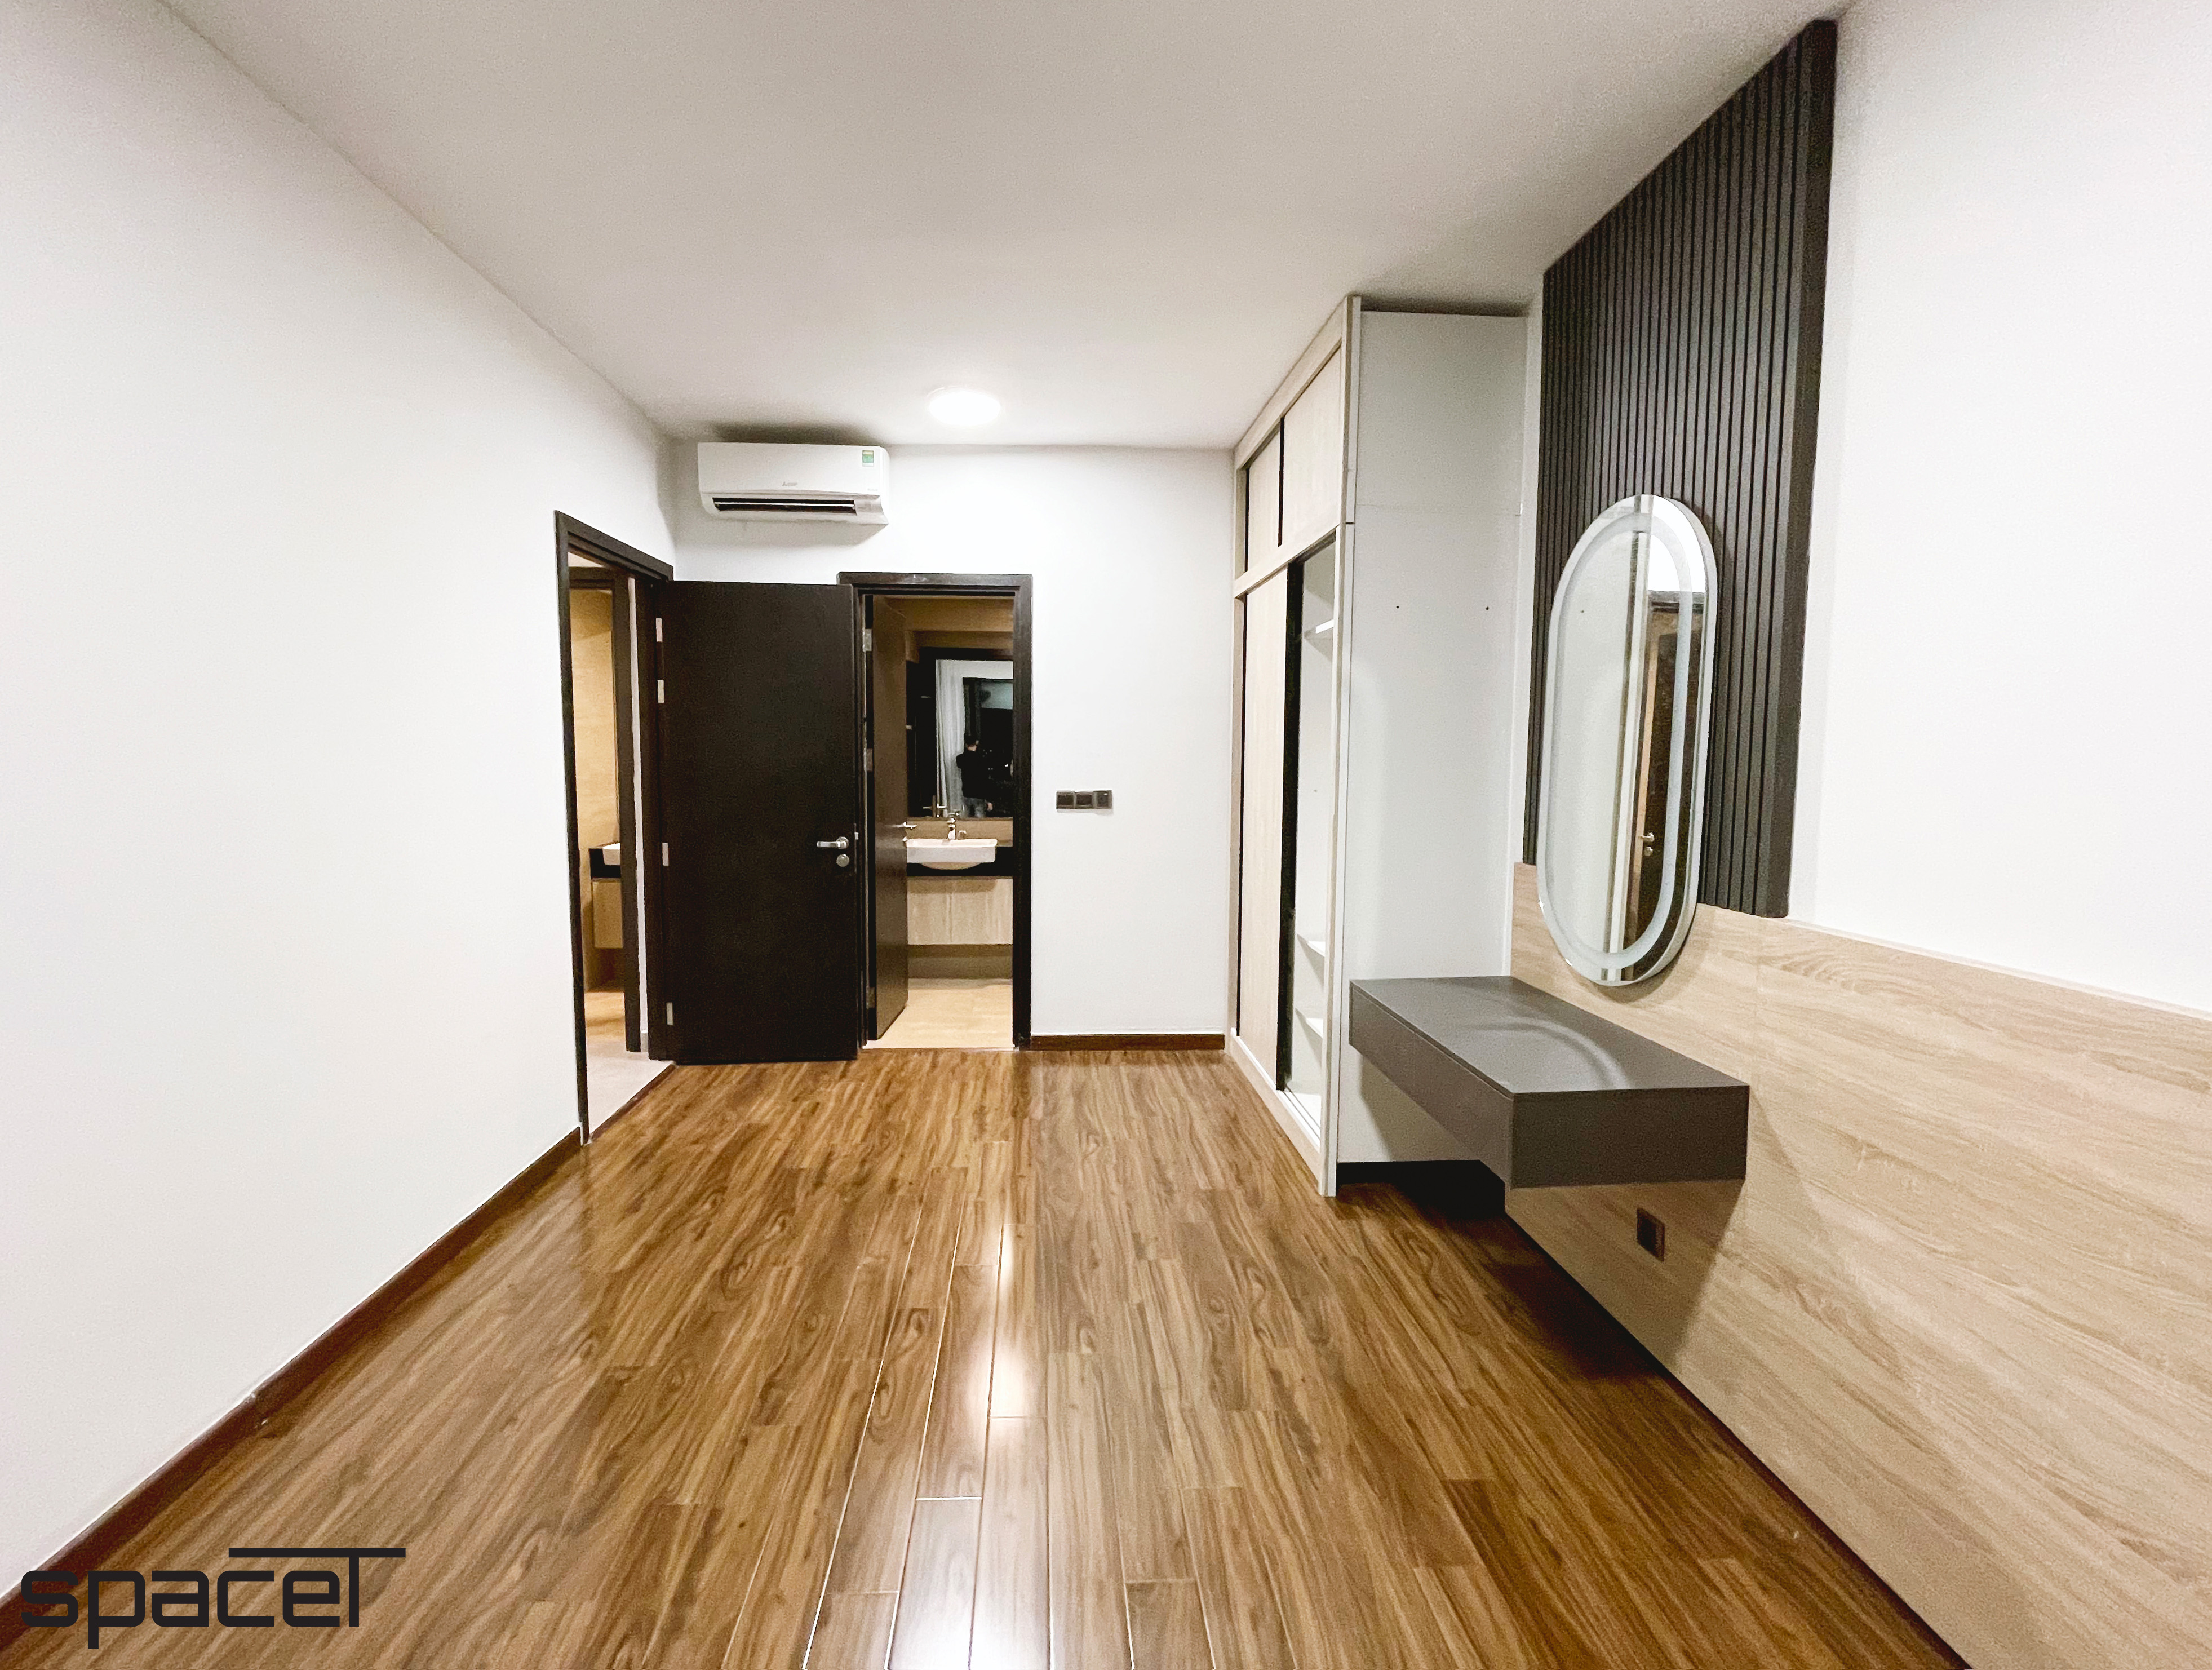 Phòng ngủ, phong cách Hiện đại Modern, hoàn thiện nội thất, căn hộ The Vista Quận 2